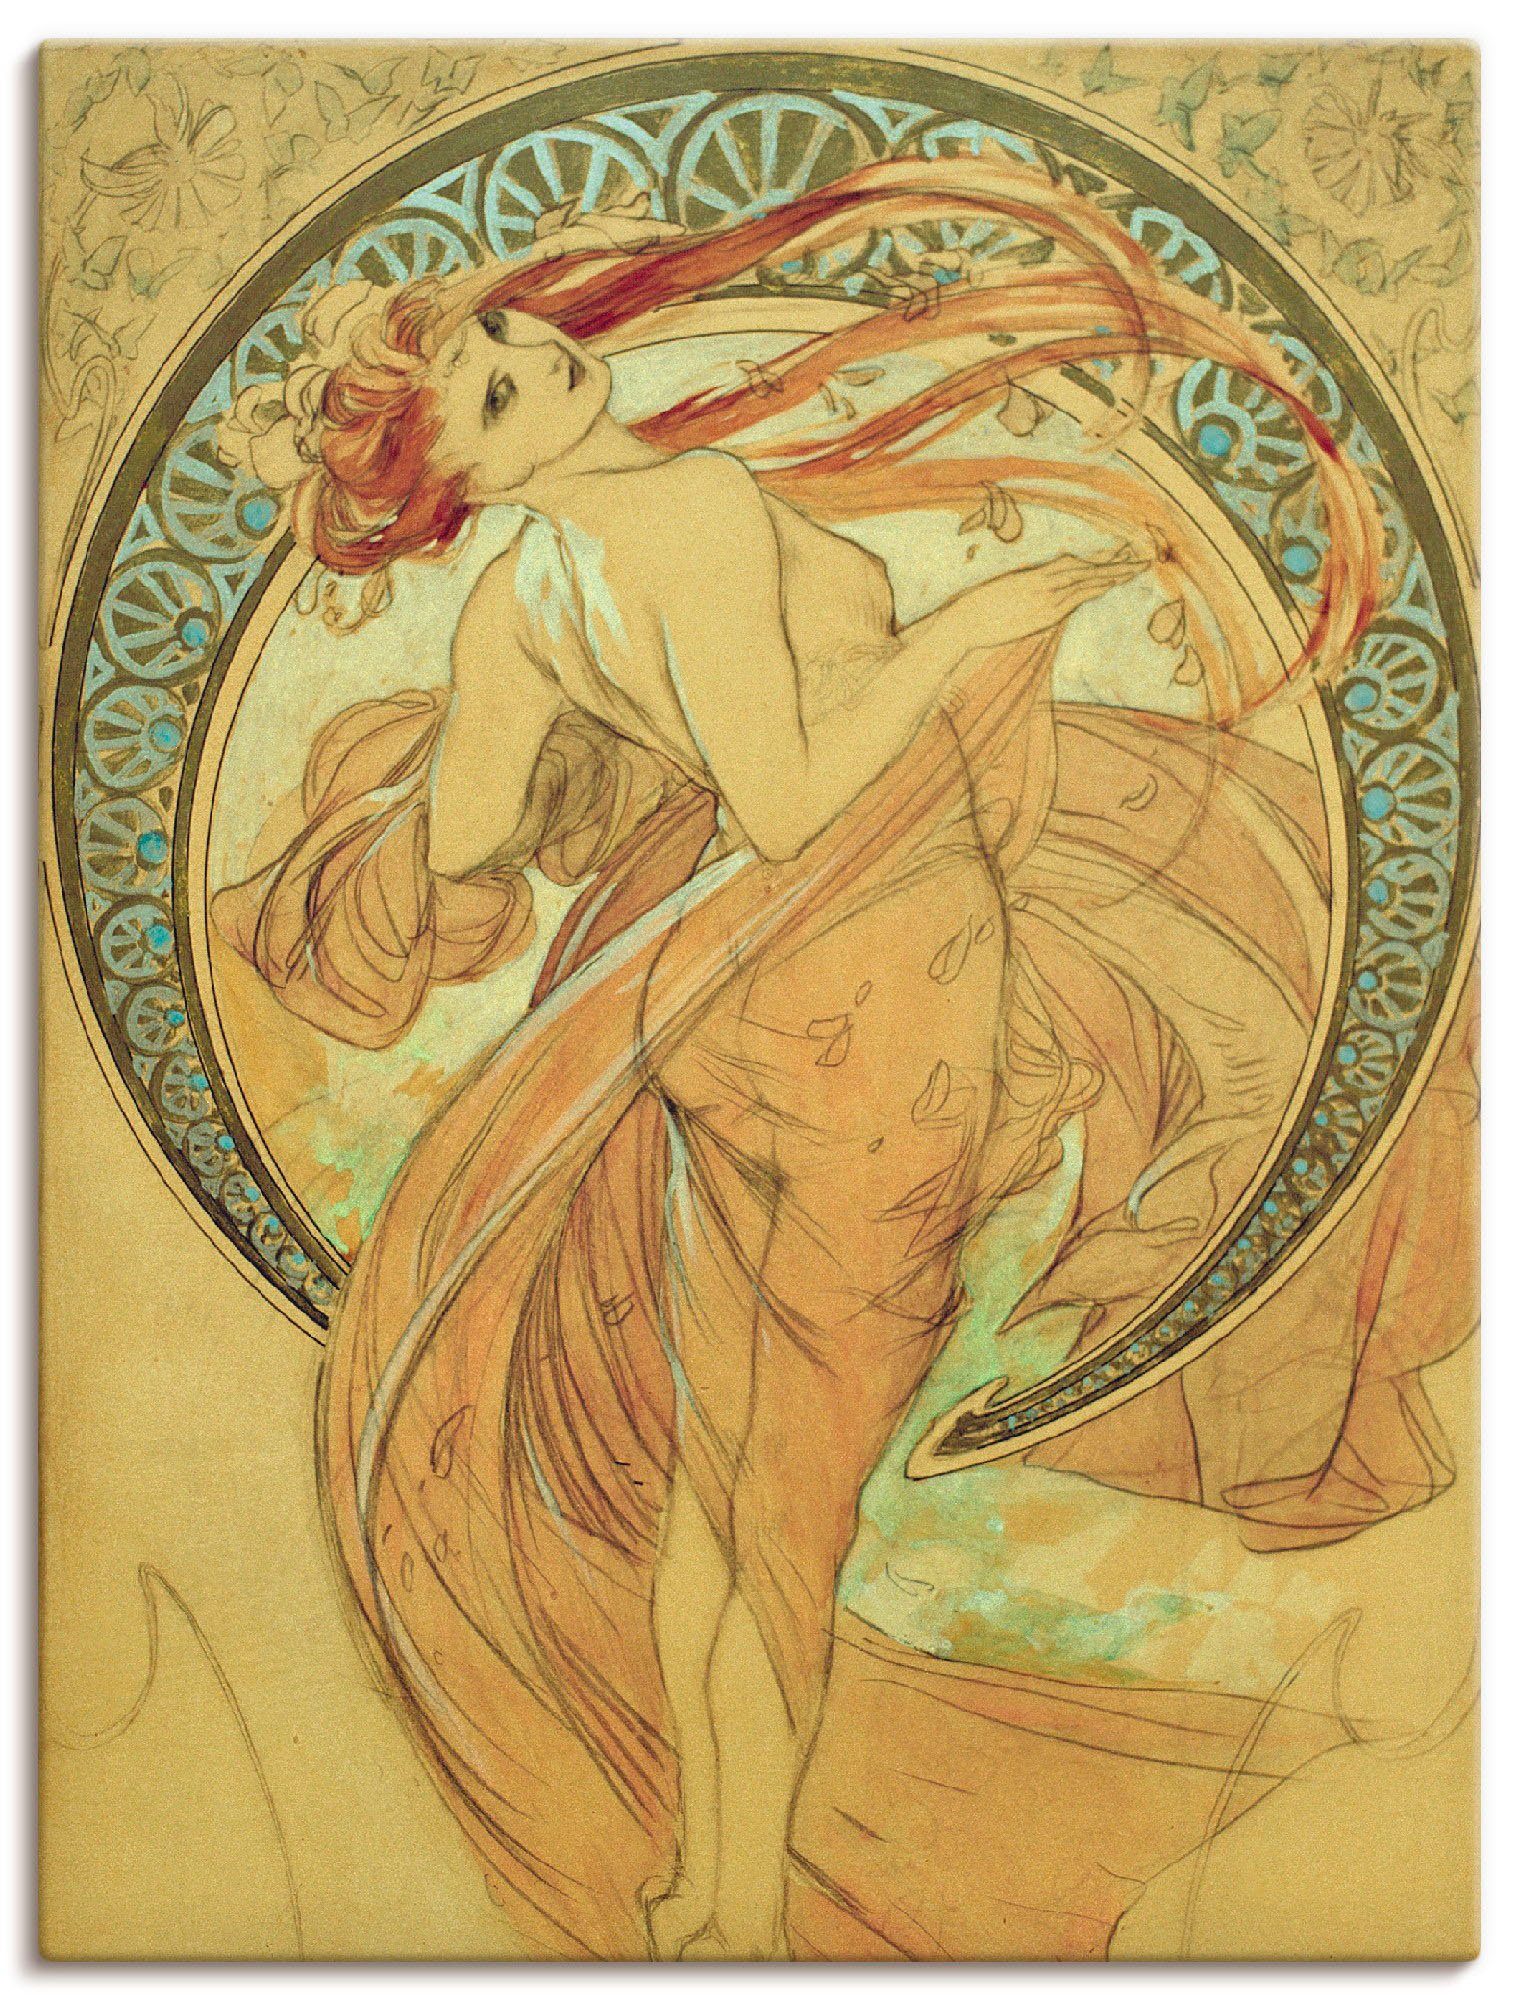 Artland Artprint De dans, 1898 in vele afmetingen & productsoorten -artprint op linnen, poster, muursticker / wandfolie ook geschikt voor de badkamer (1 stuk)